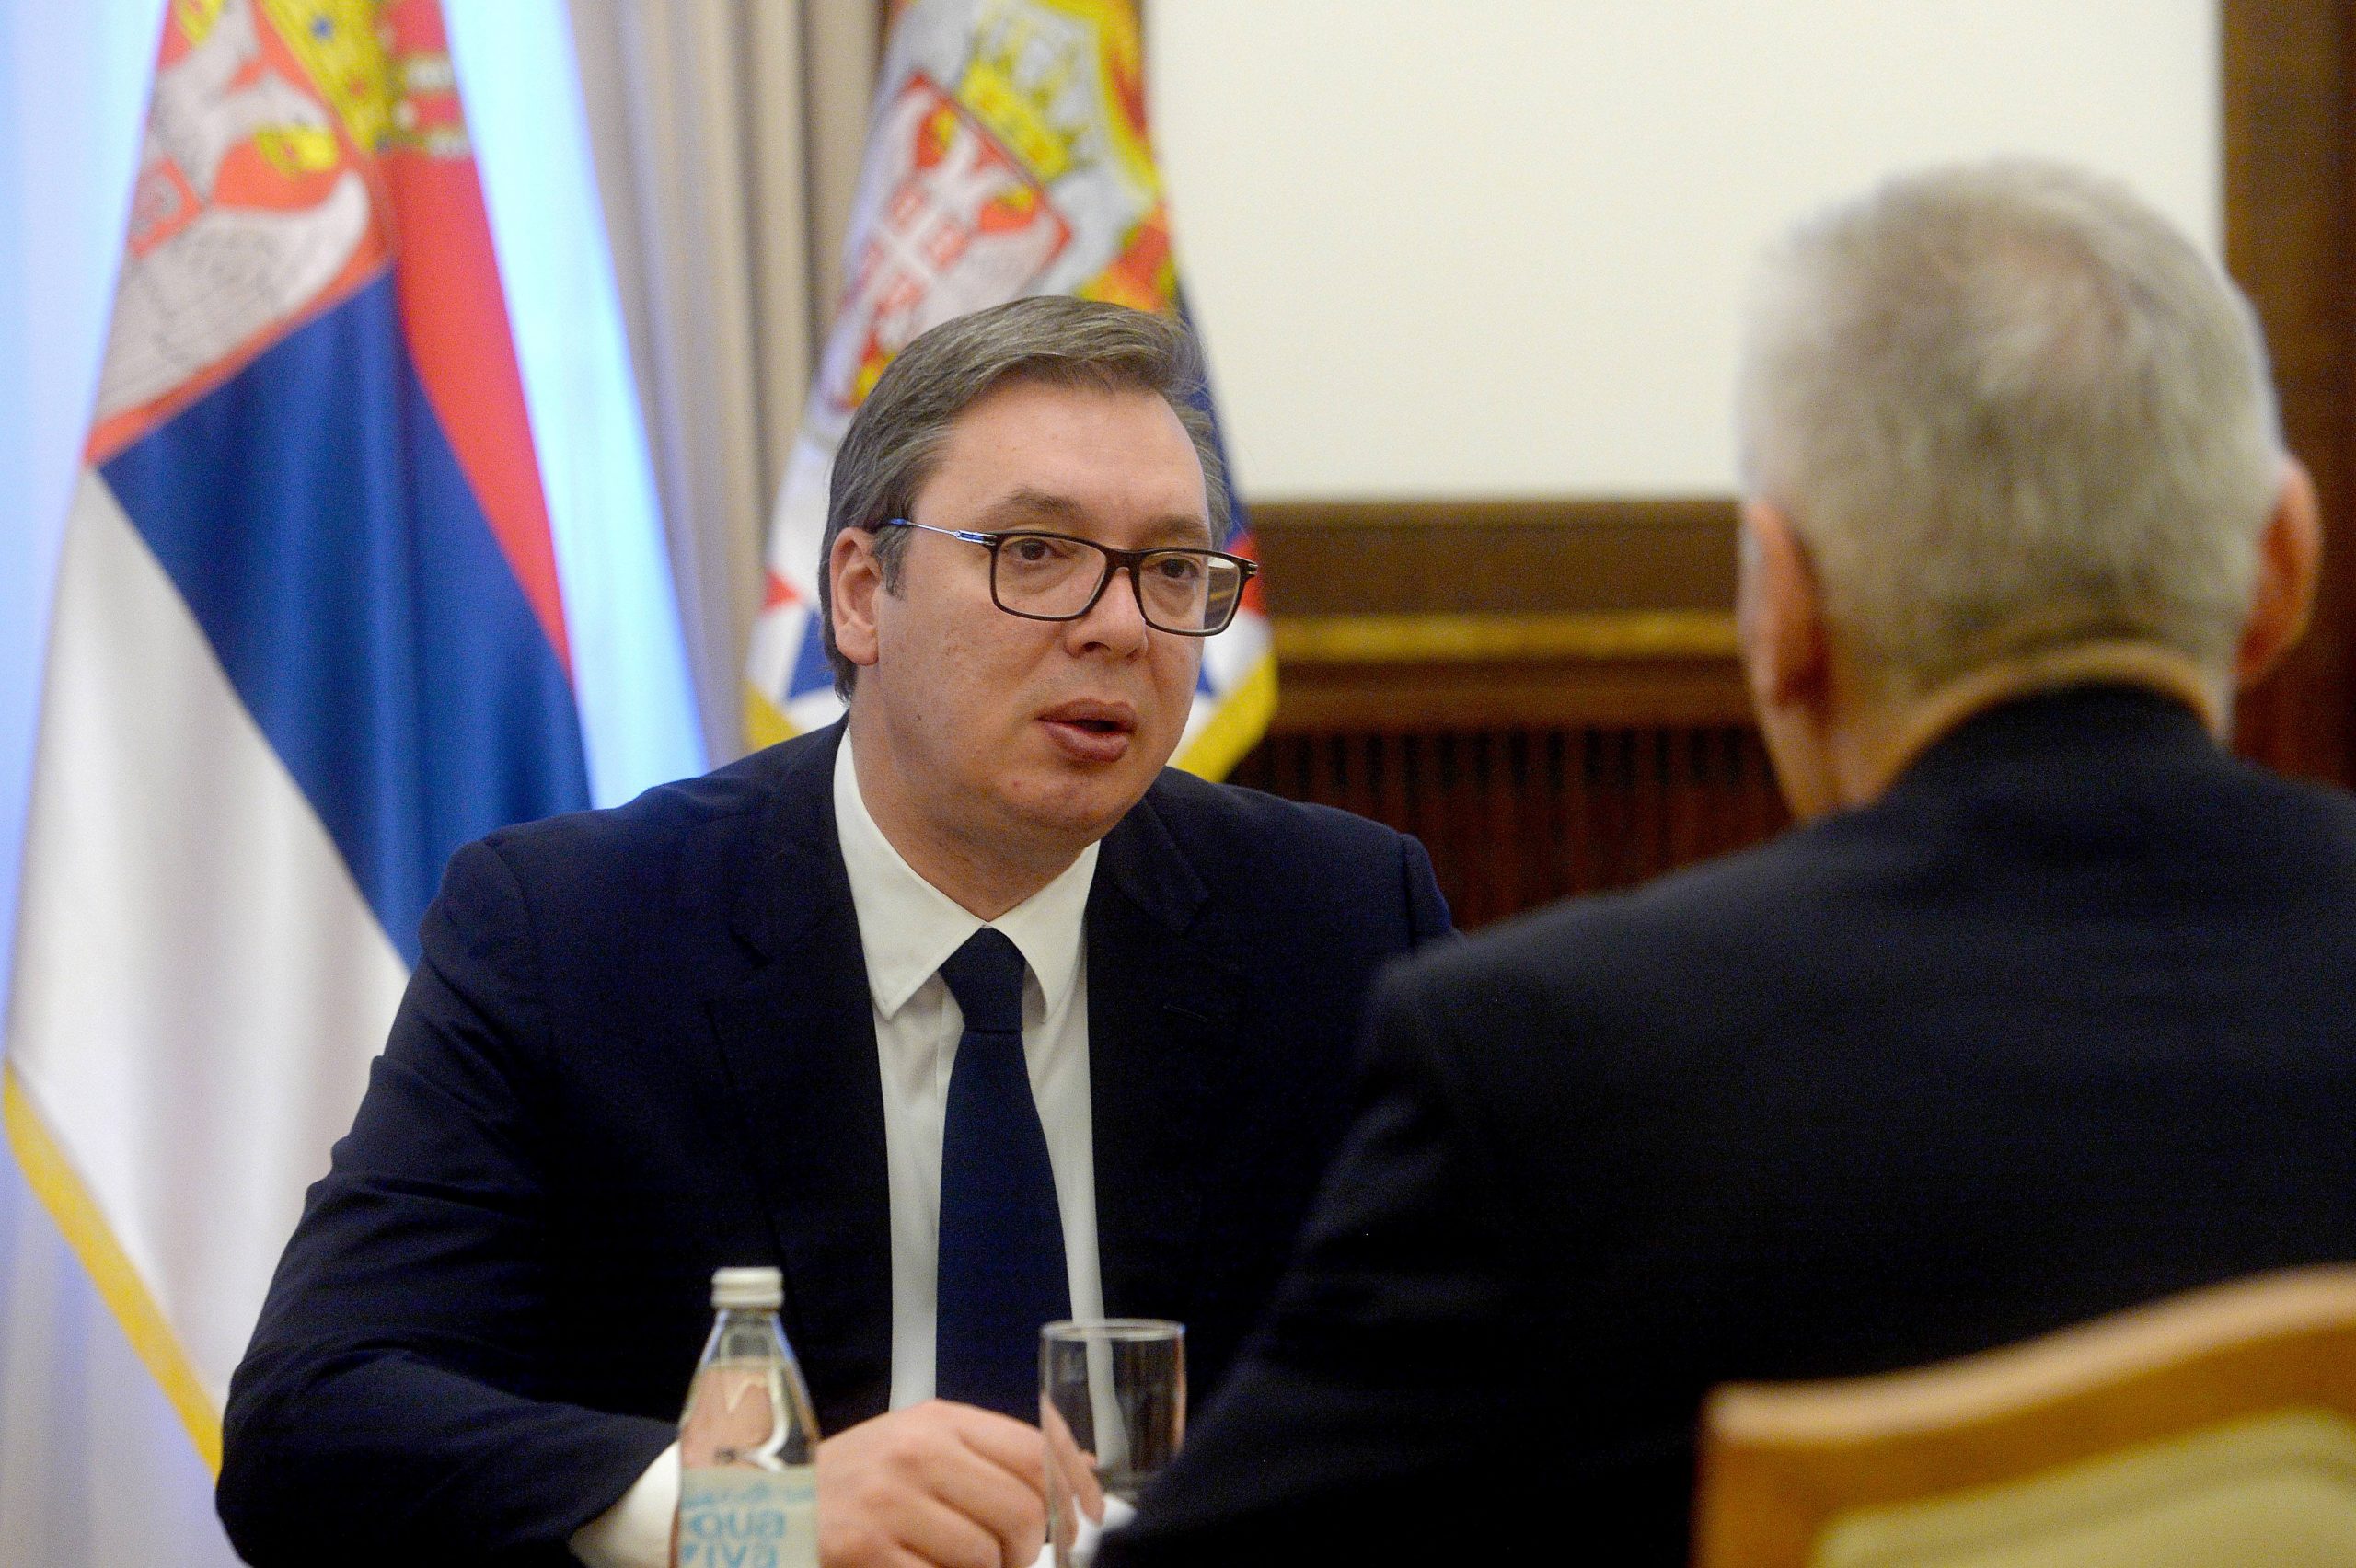 Ambasador Rusije odbacio kao izmišljotine navode da duboka država Rusije ruši Vučića 1